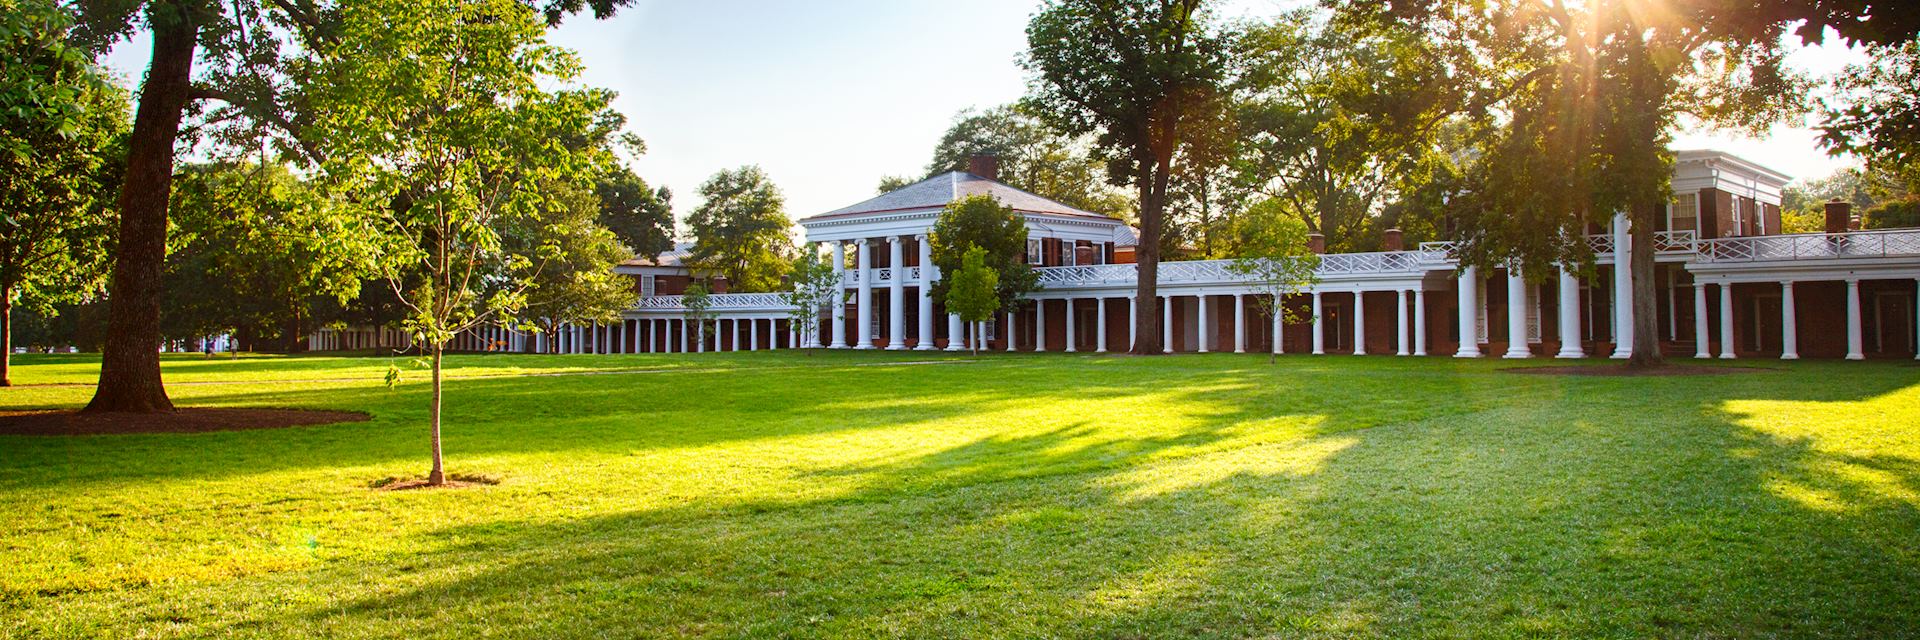 The Lawn, University of Virginia, Charlottesville